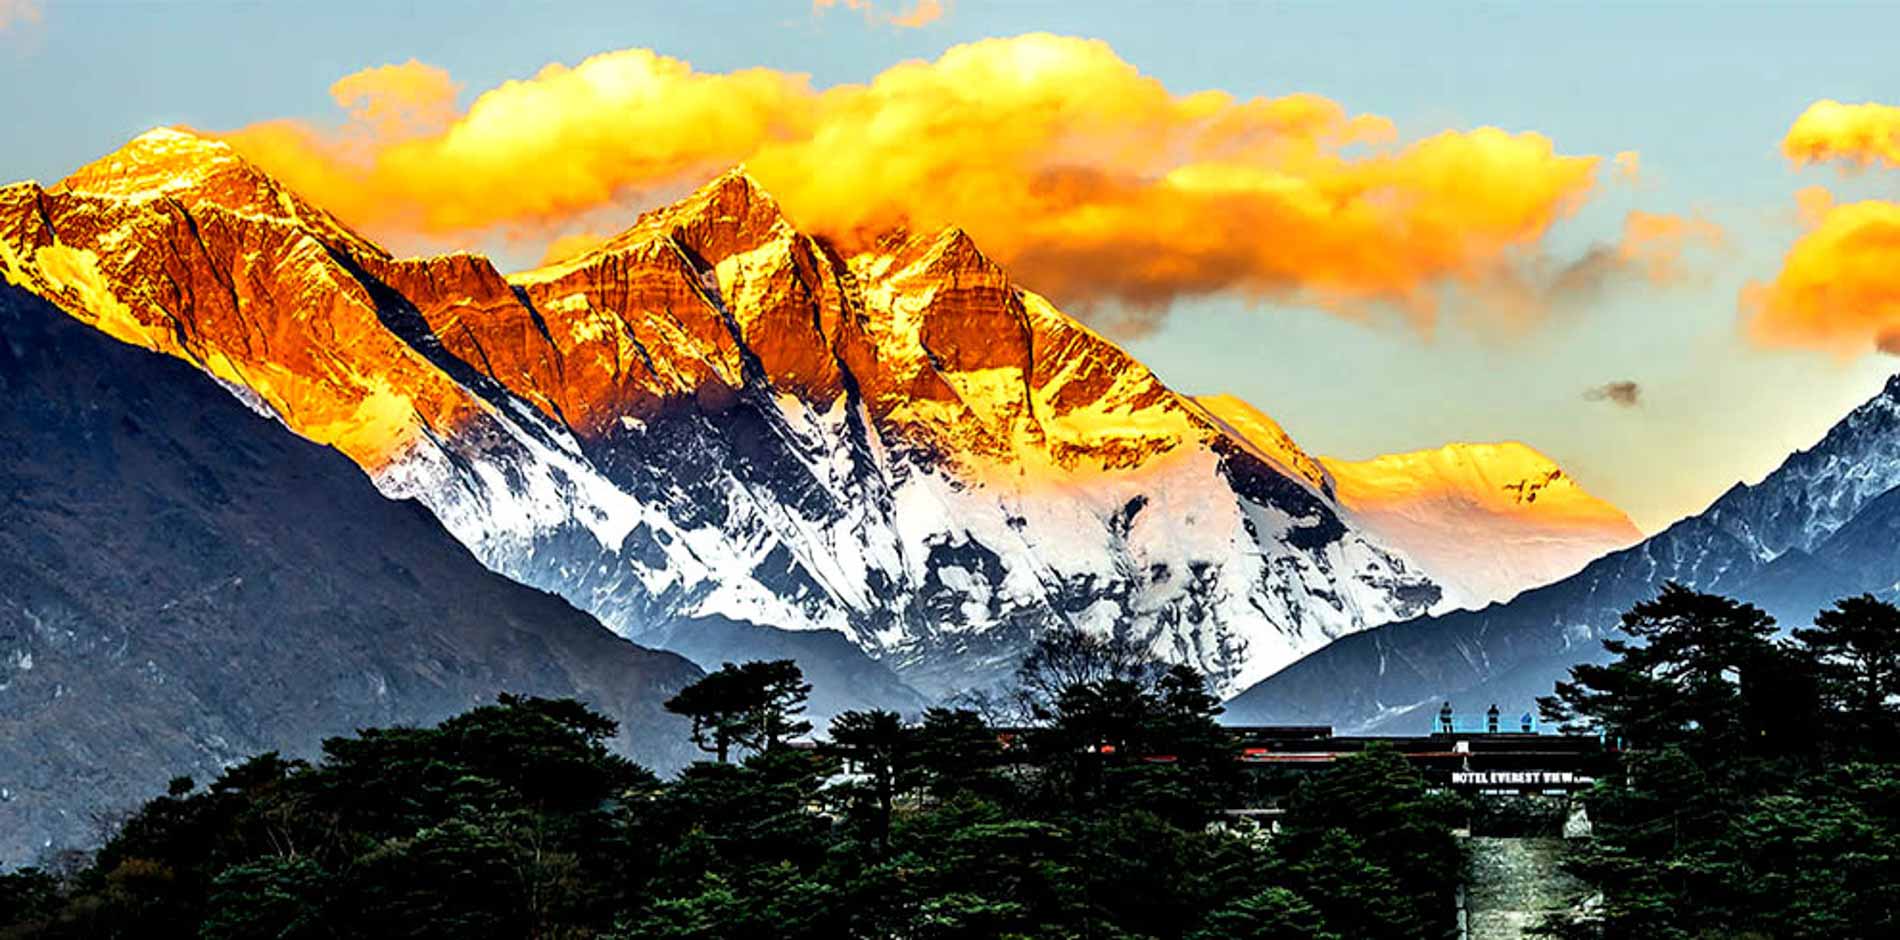 Everest Base Camp Trek 5 Days; A luxury Tour to Everest Region